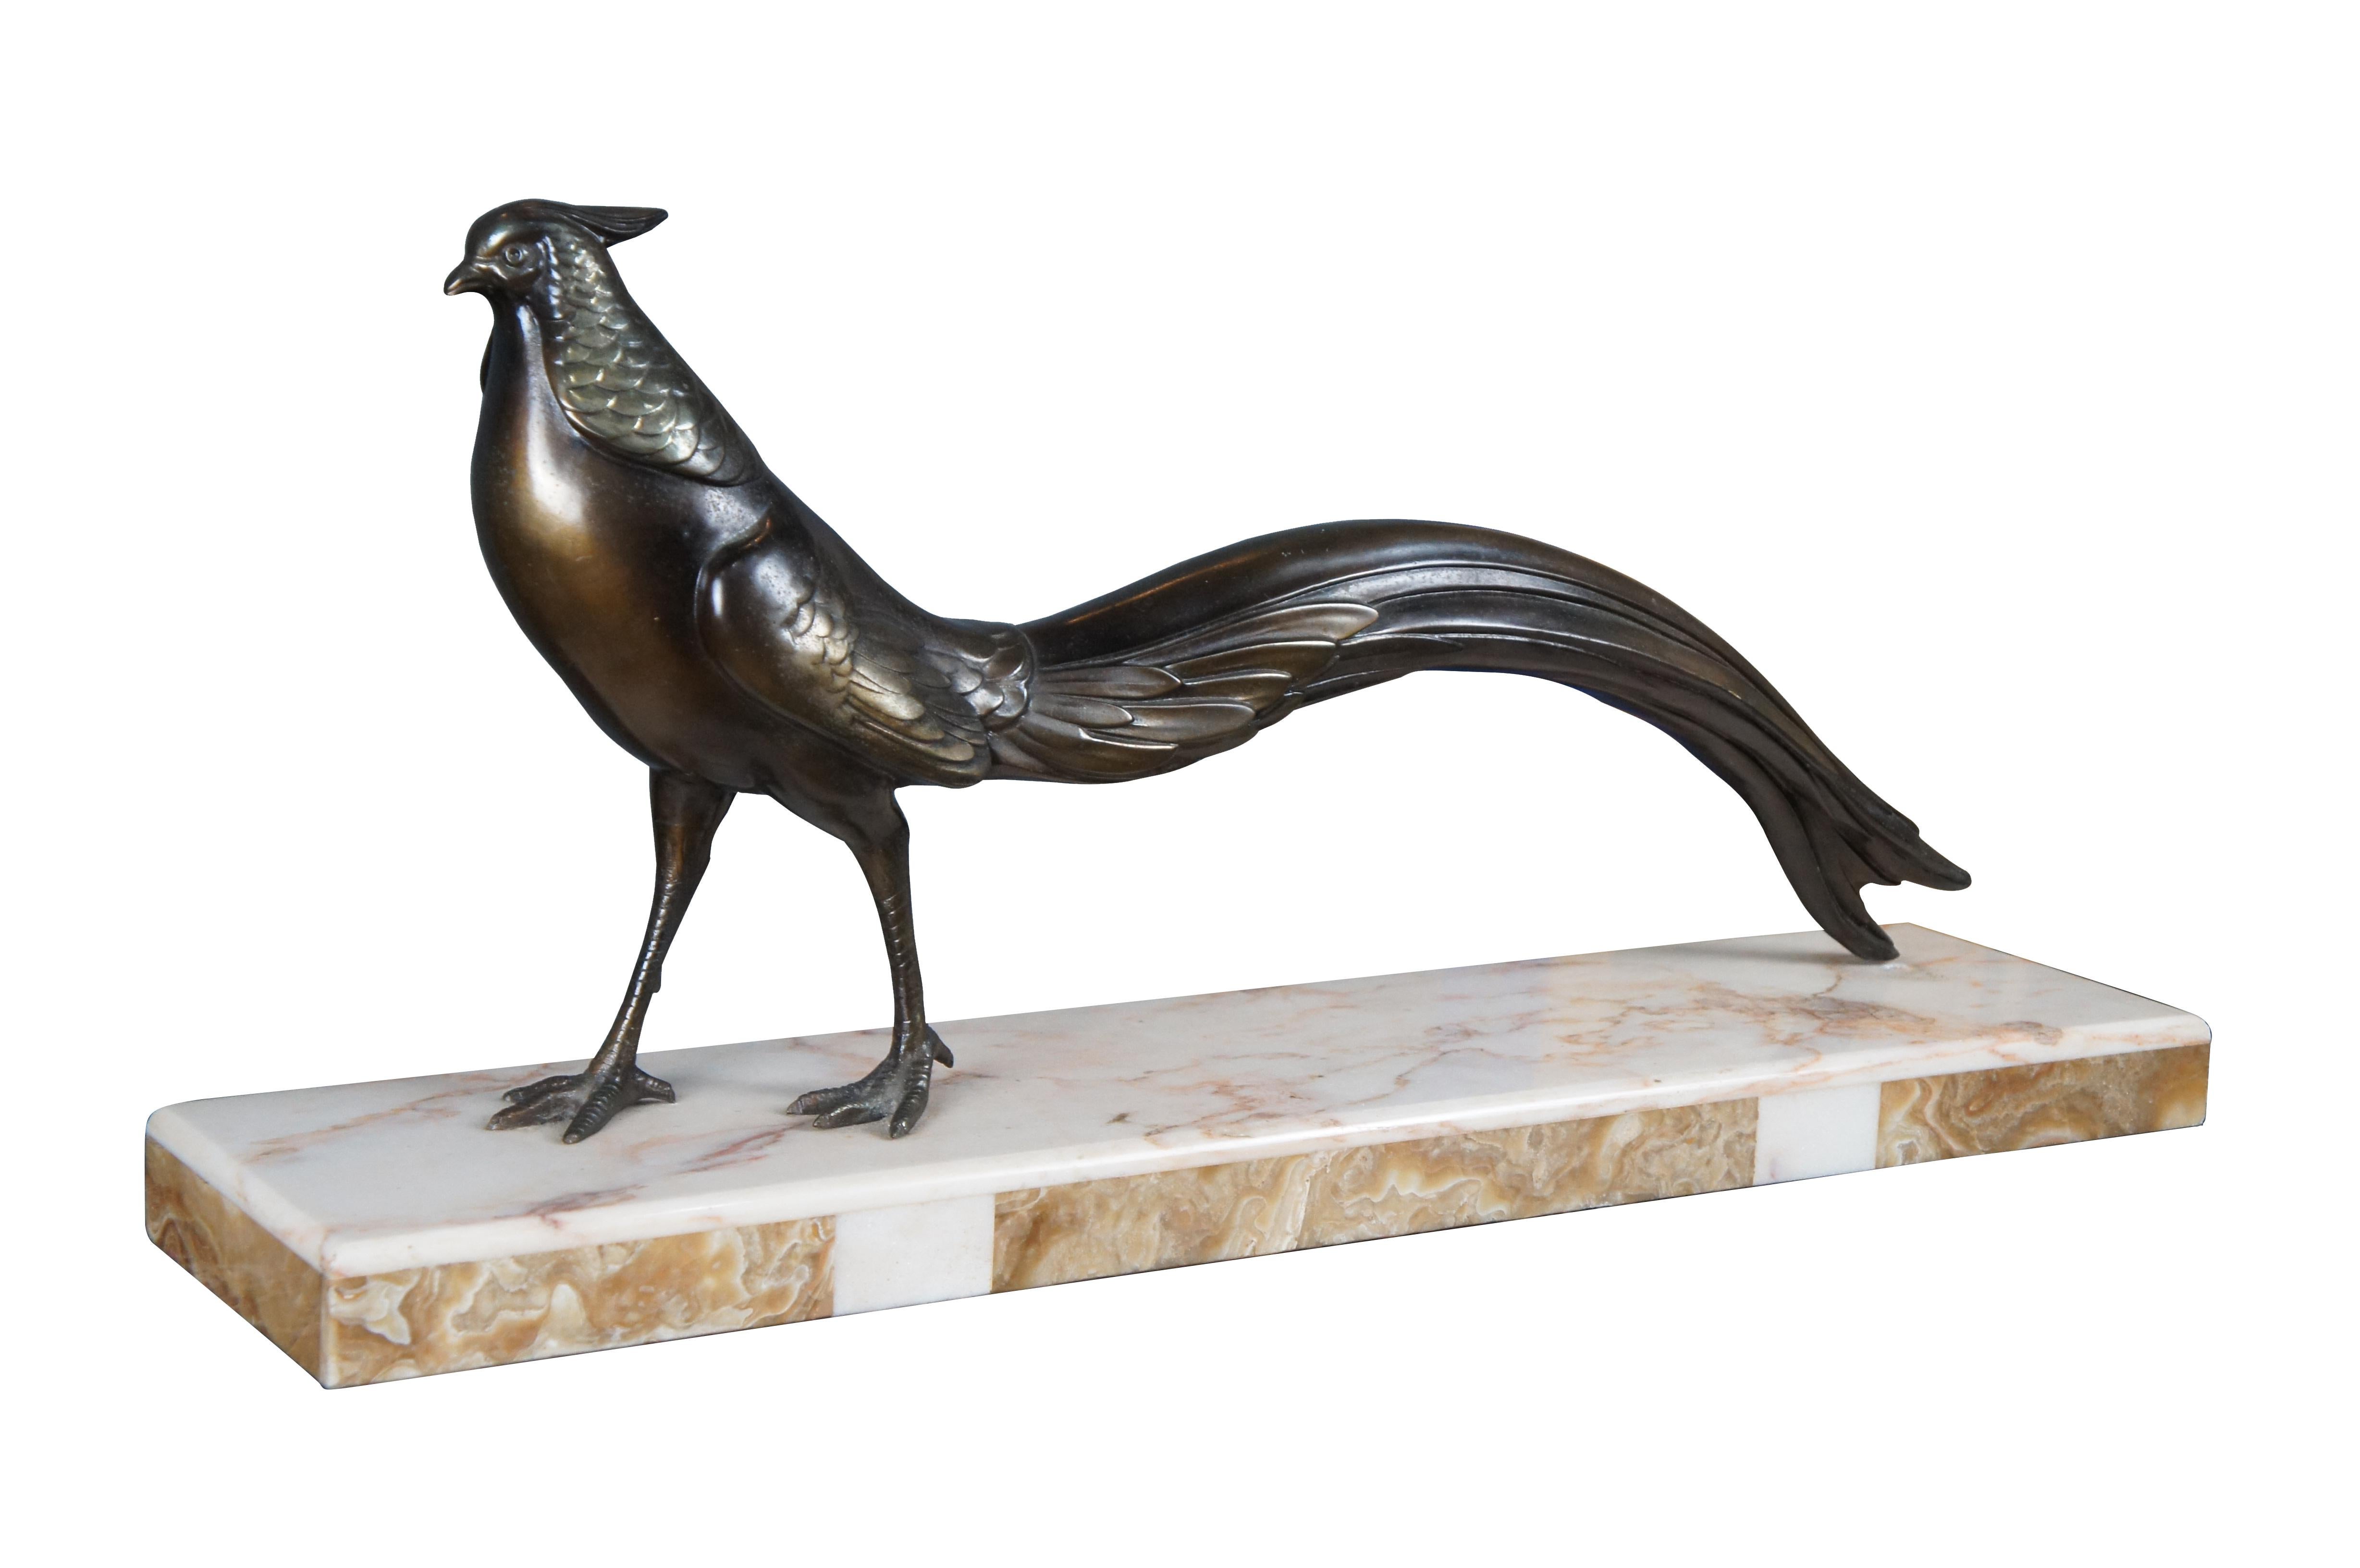 Eine Ausnahme Französisch Art Deco Bronzestatue von Fasan auf Marmorsockel, circa 1920er Jahre. Zeigt den auffälligen Vogel in entspannterer Stimmung, vielleicht auf der Suche nach Nahrung, aber mit wachsamem Auge. Eine solche Darstellung entsprach